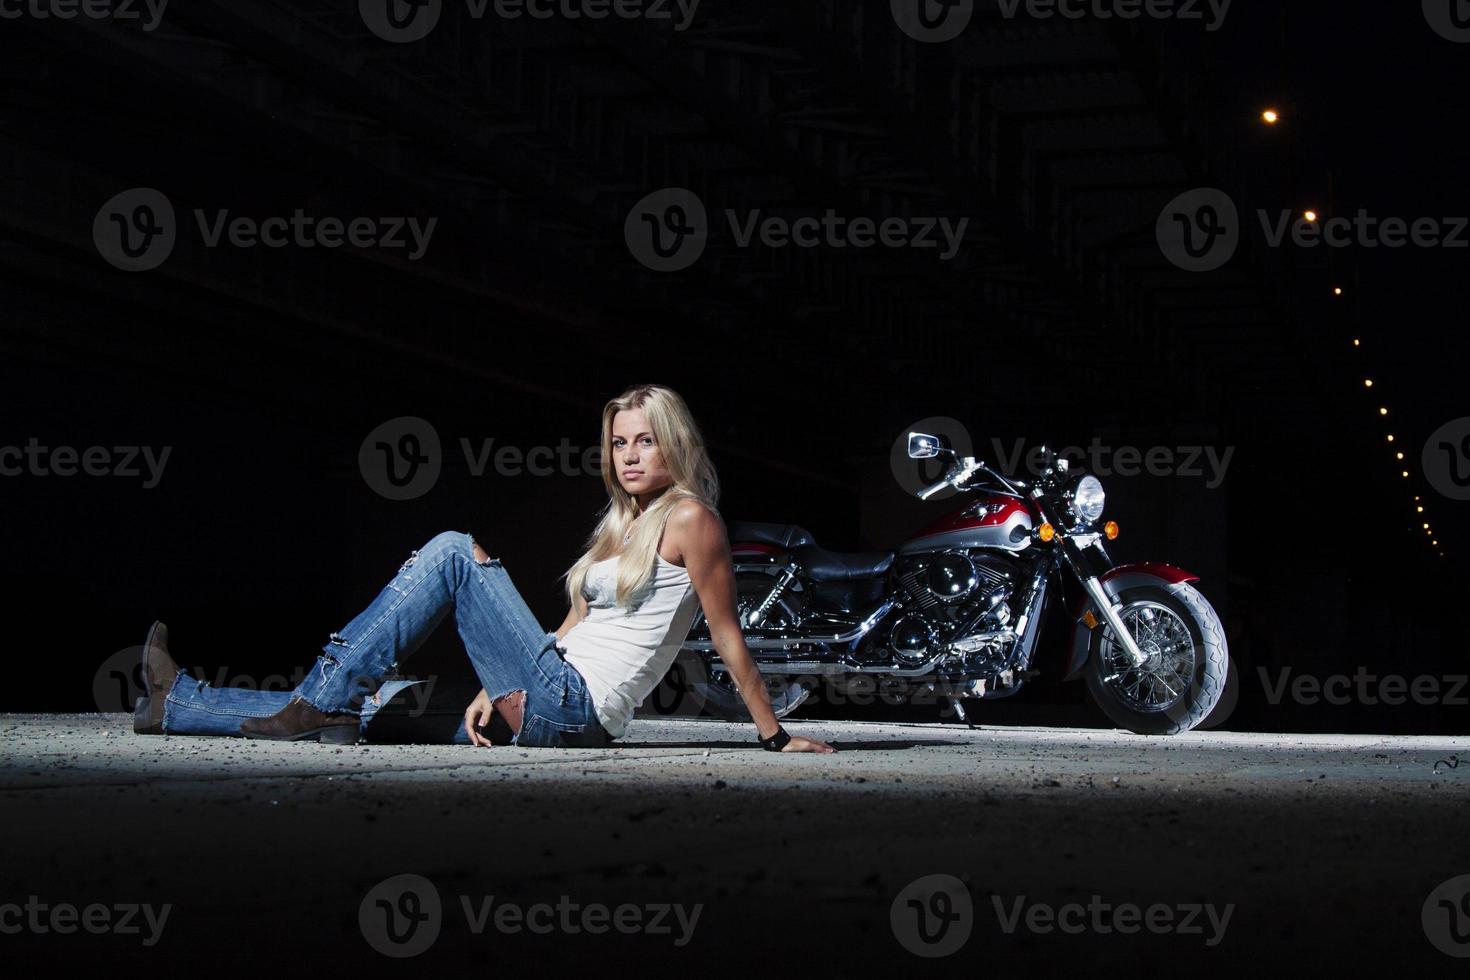 sexy Blondine sitzt in der Nähe ihres Motorrades foto